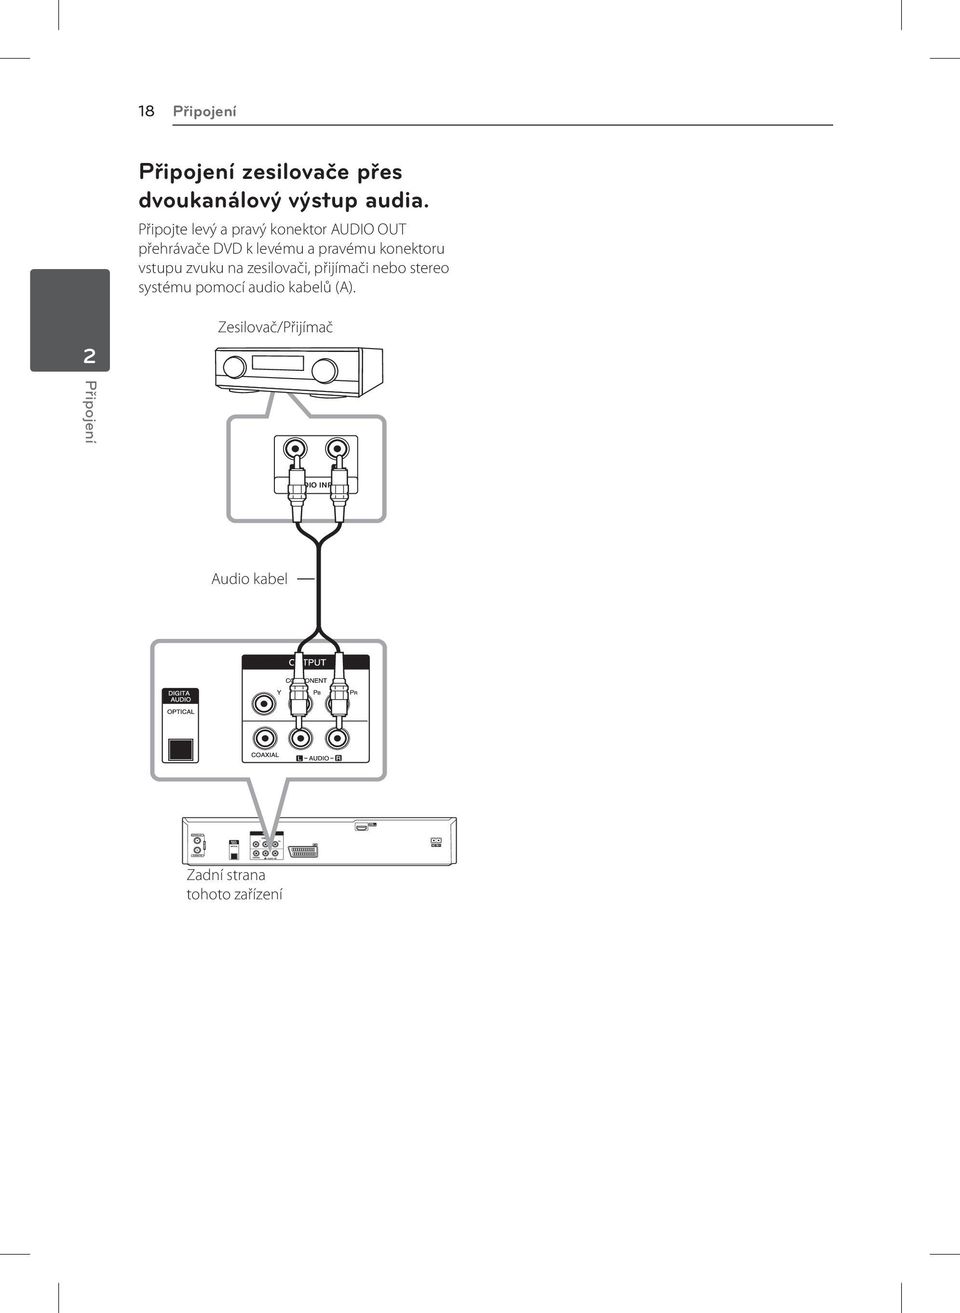 konektoru vstupu zvuku na zesilovači, přijímači nebo stereo systému pomocí audio